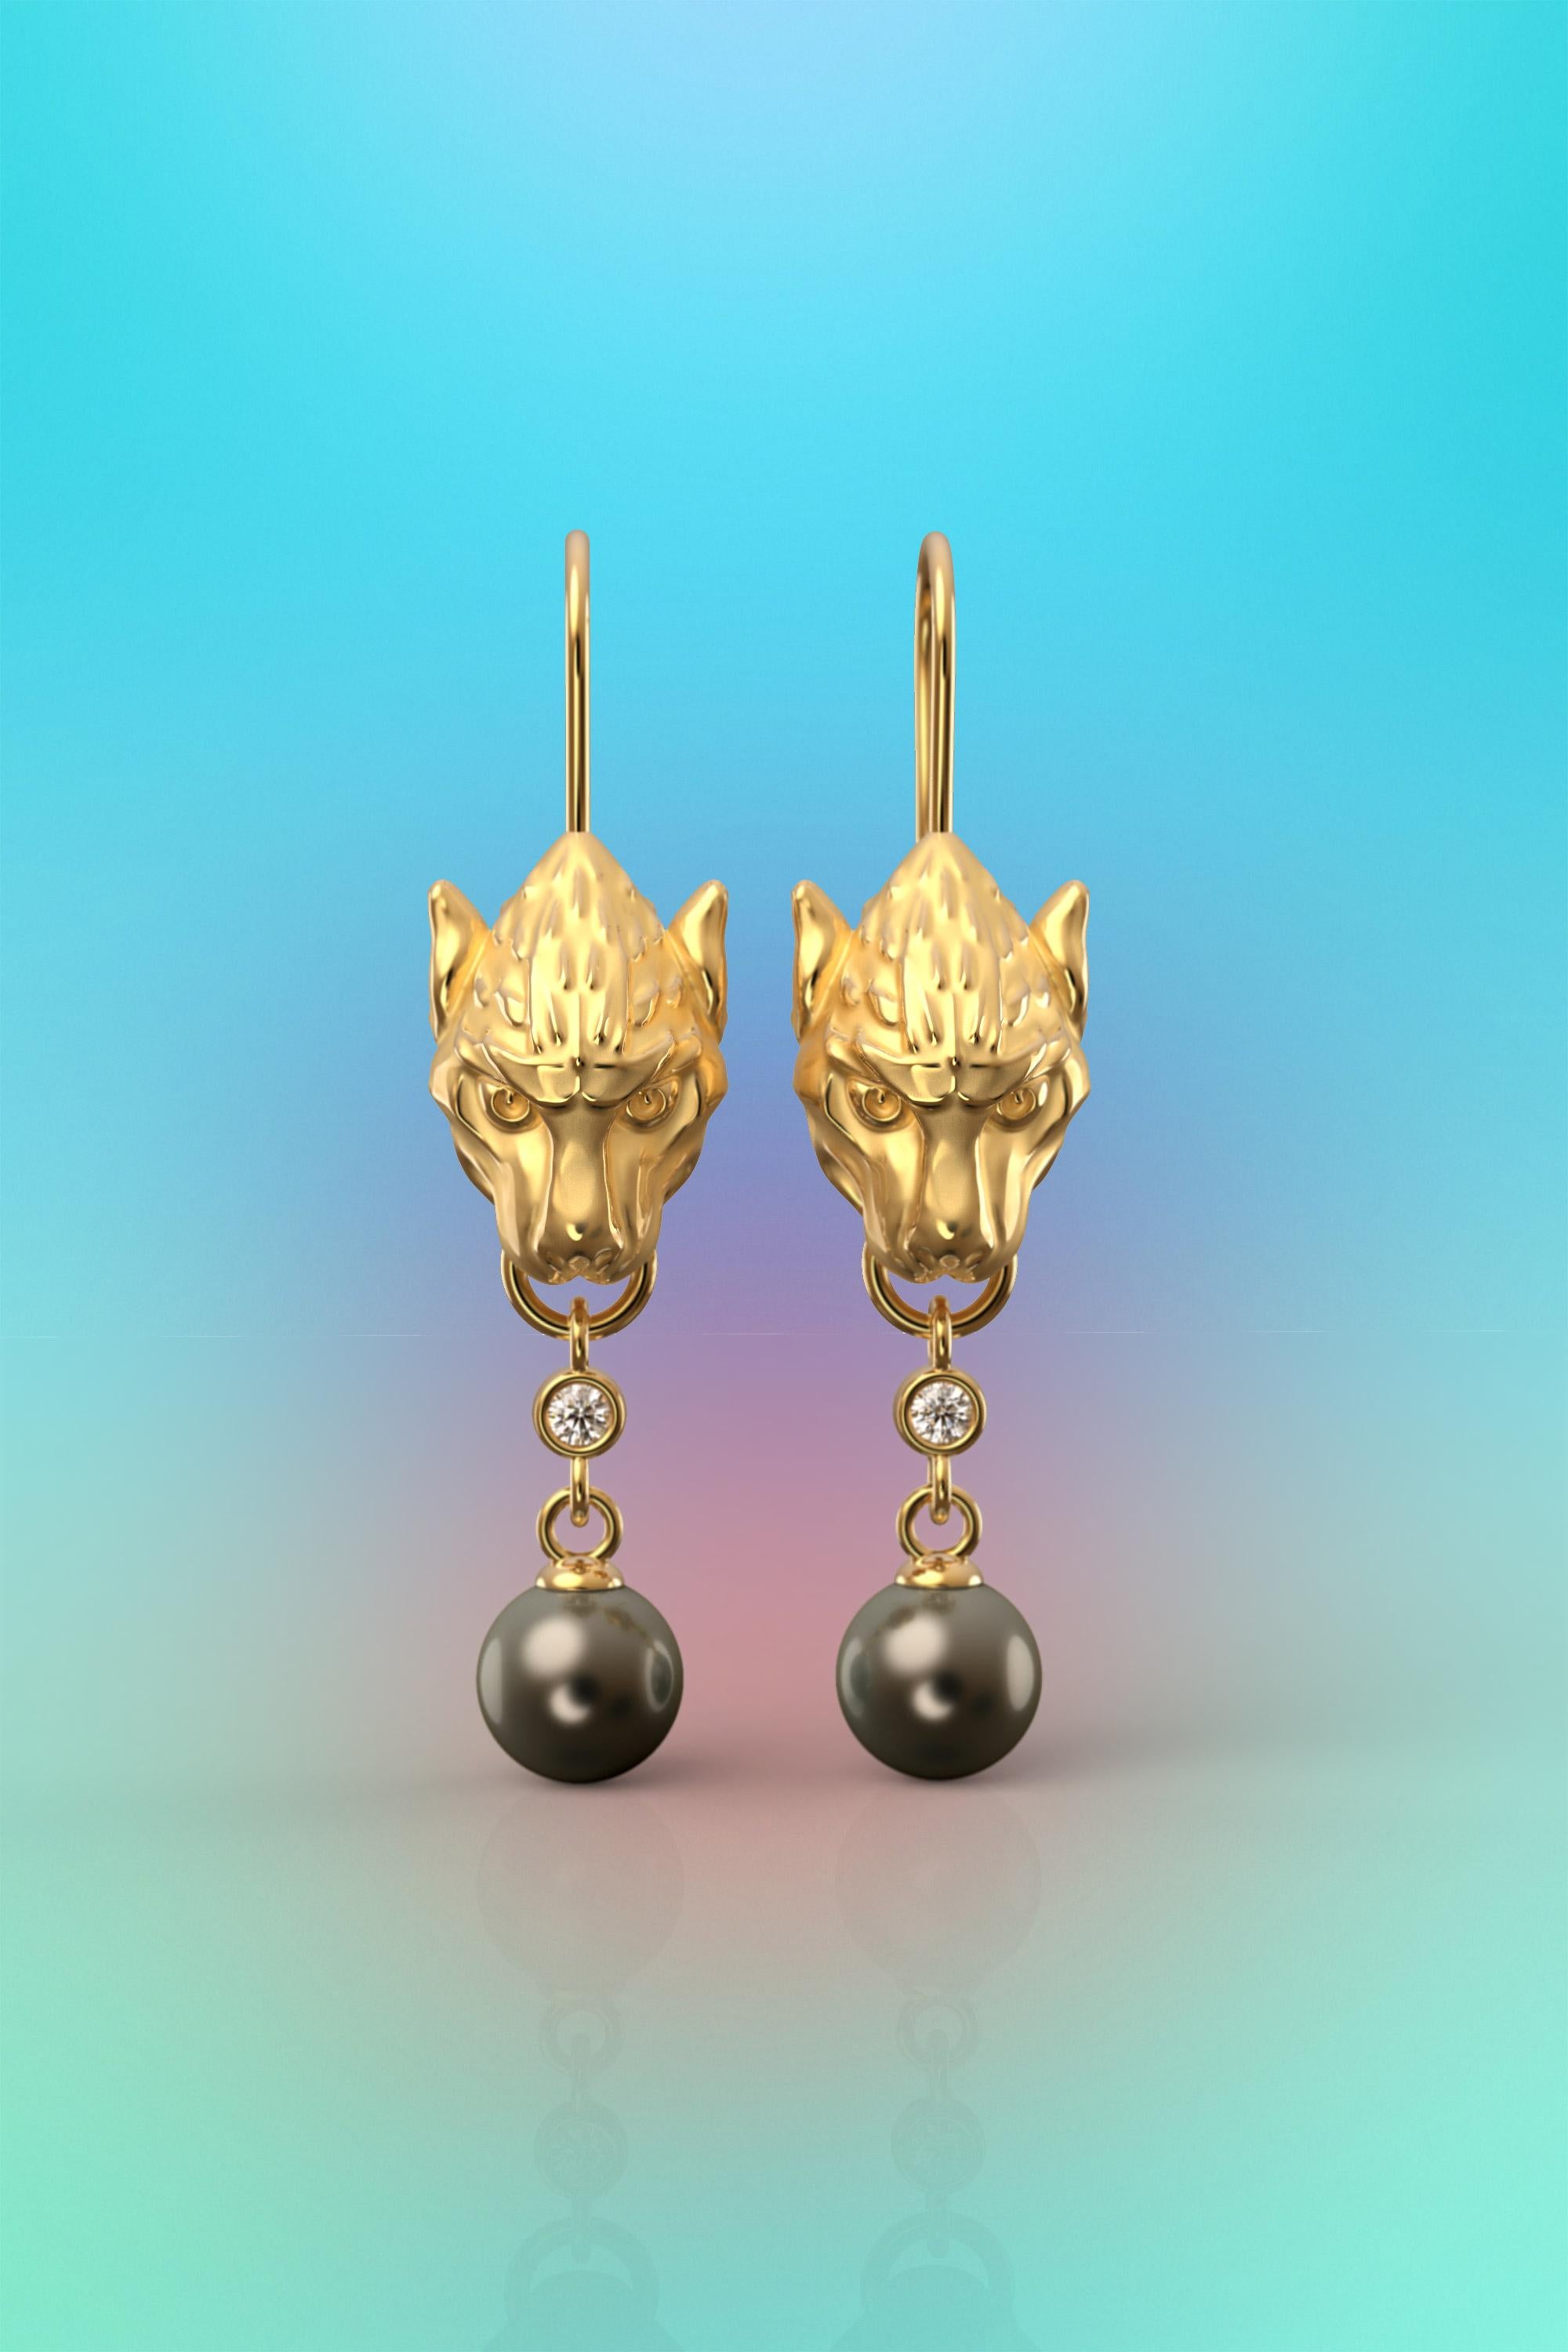 Skulpturale Ohrringe aus echtem 18-karätigem Gold mit natürlichen Tahiti-Perlen und natürlichen Diamanten, die auf Bestellung gefertigt werden.
Wir präsentieren unsere exquisiten, von einem gotischen Wasserspeier inspirierten langen Ohrringe, bei